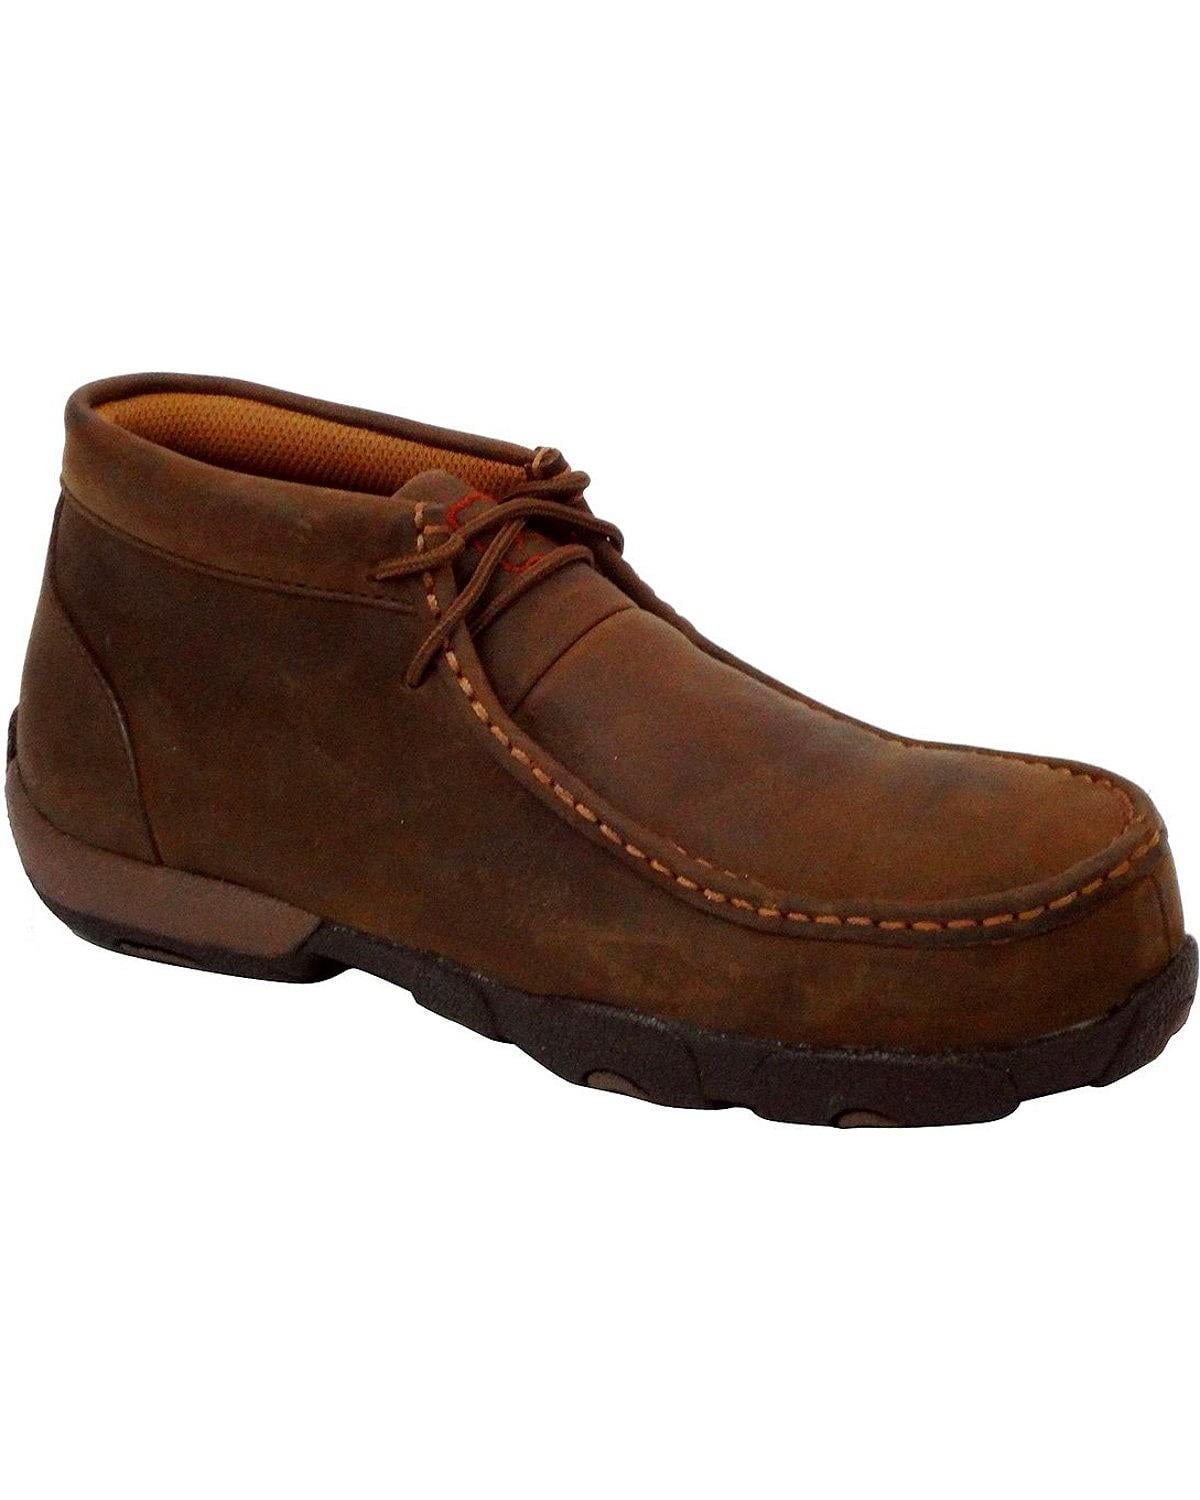 Women's Twisted X Boots WDMST01 Steel Toe Moc Work Shoe Dark Brown Full ...